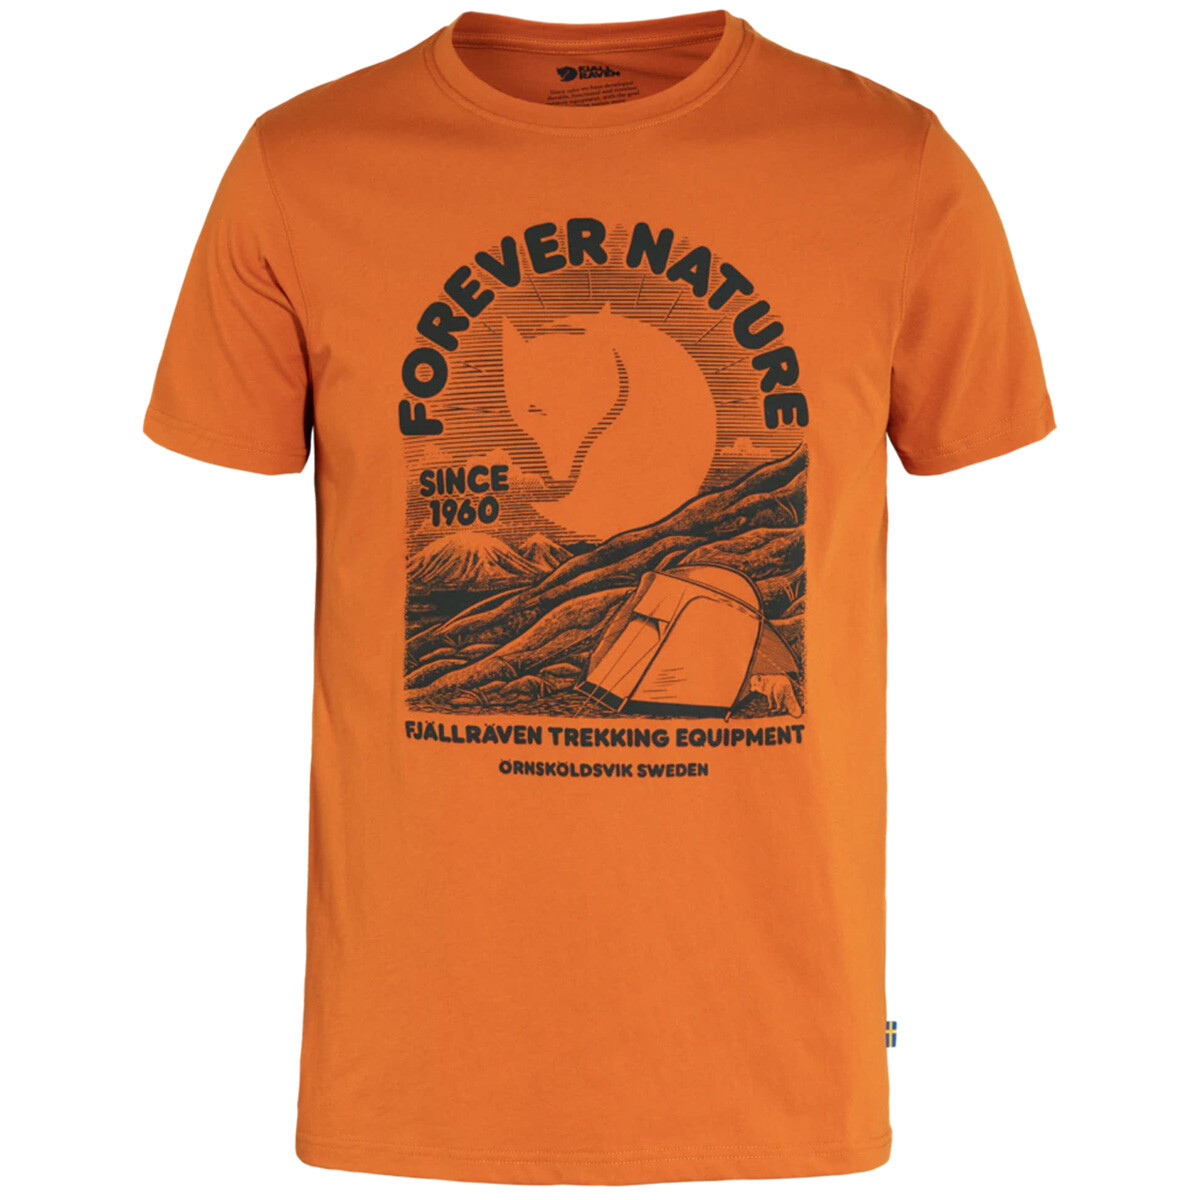 Billede af Fjällräven Equipment T-shirt (Sunset Orange, L) hos Specialbutikken